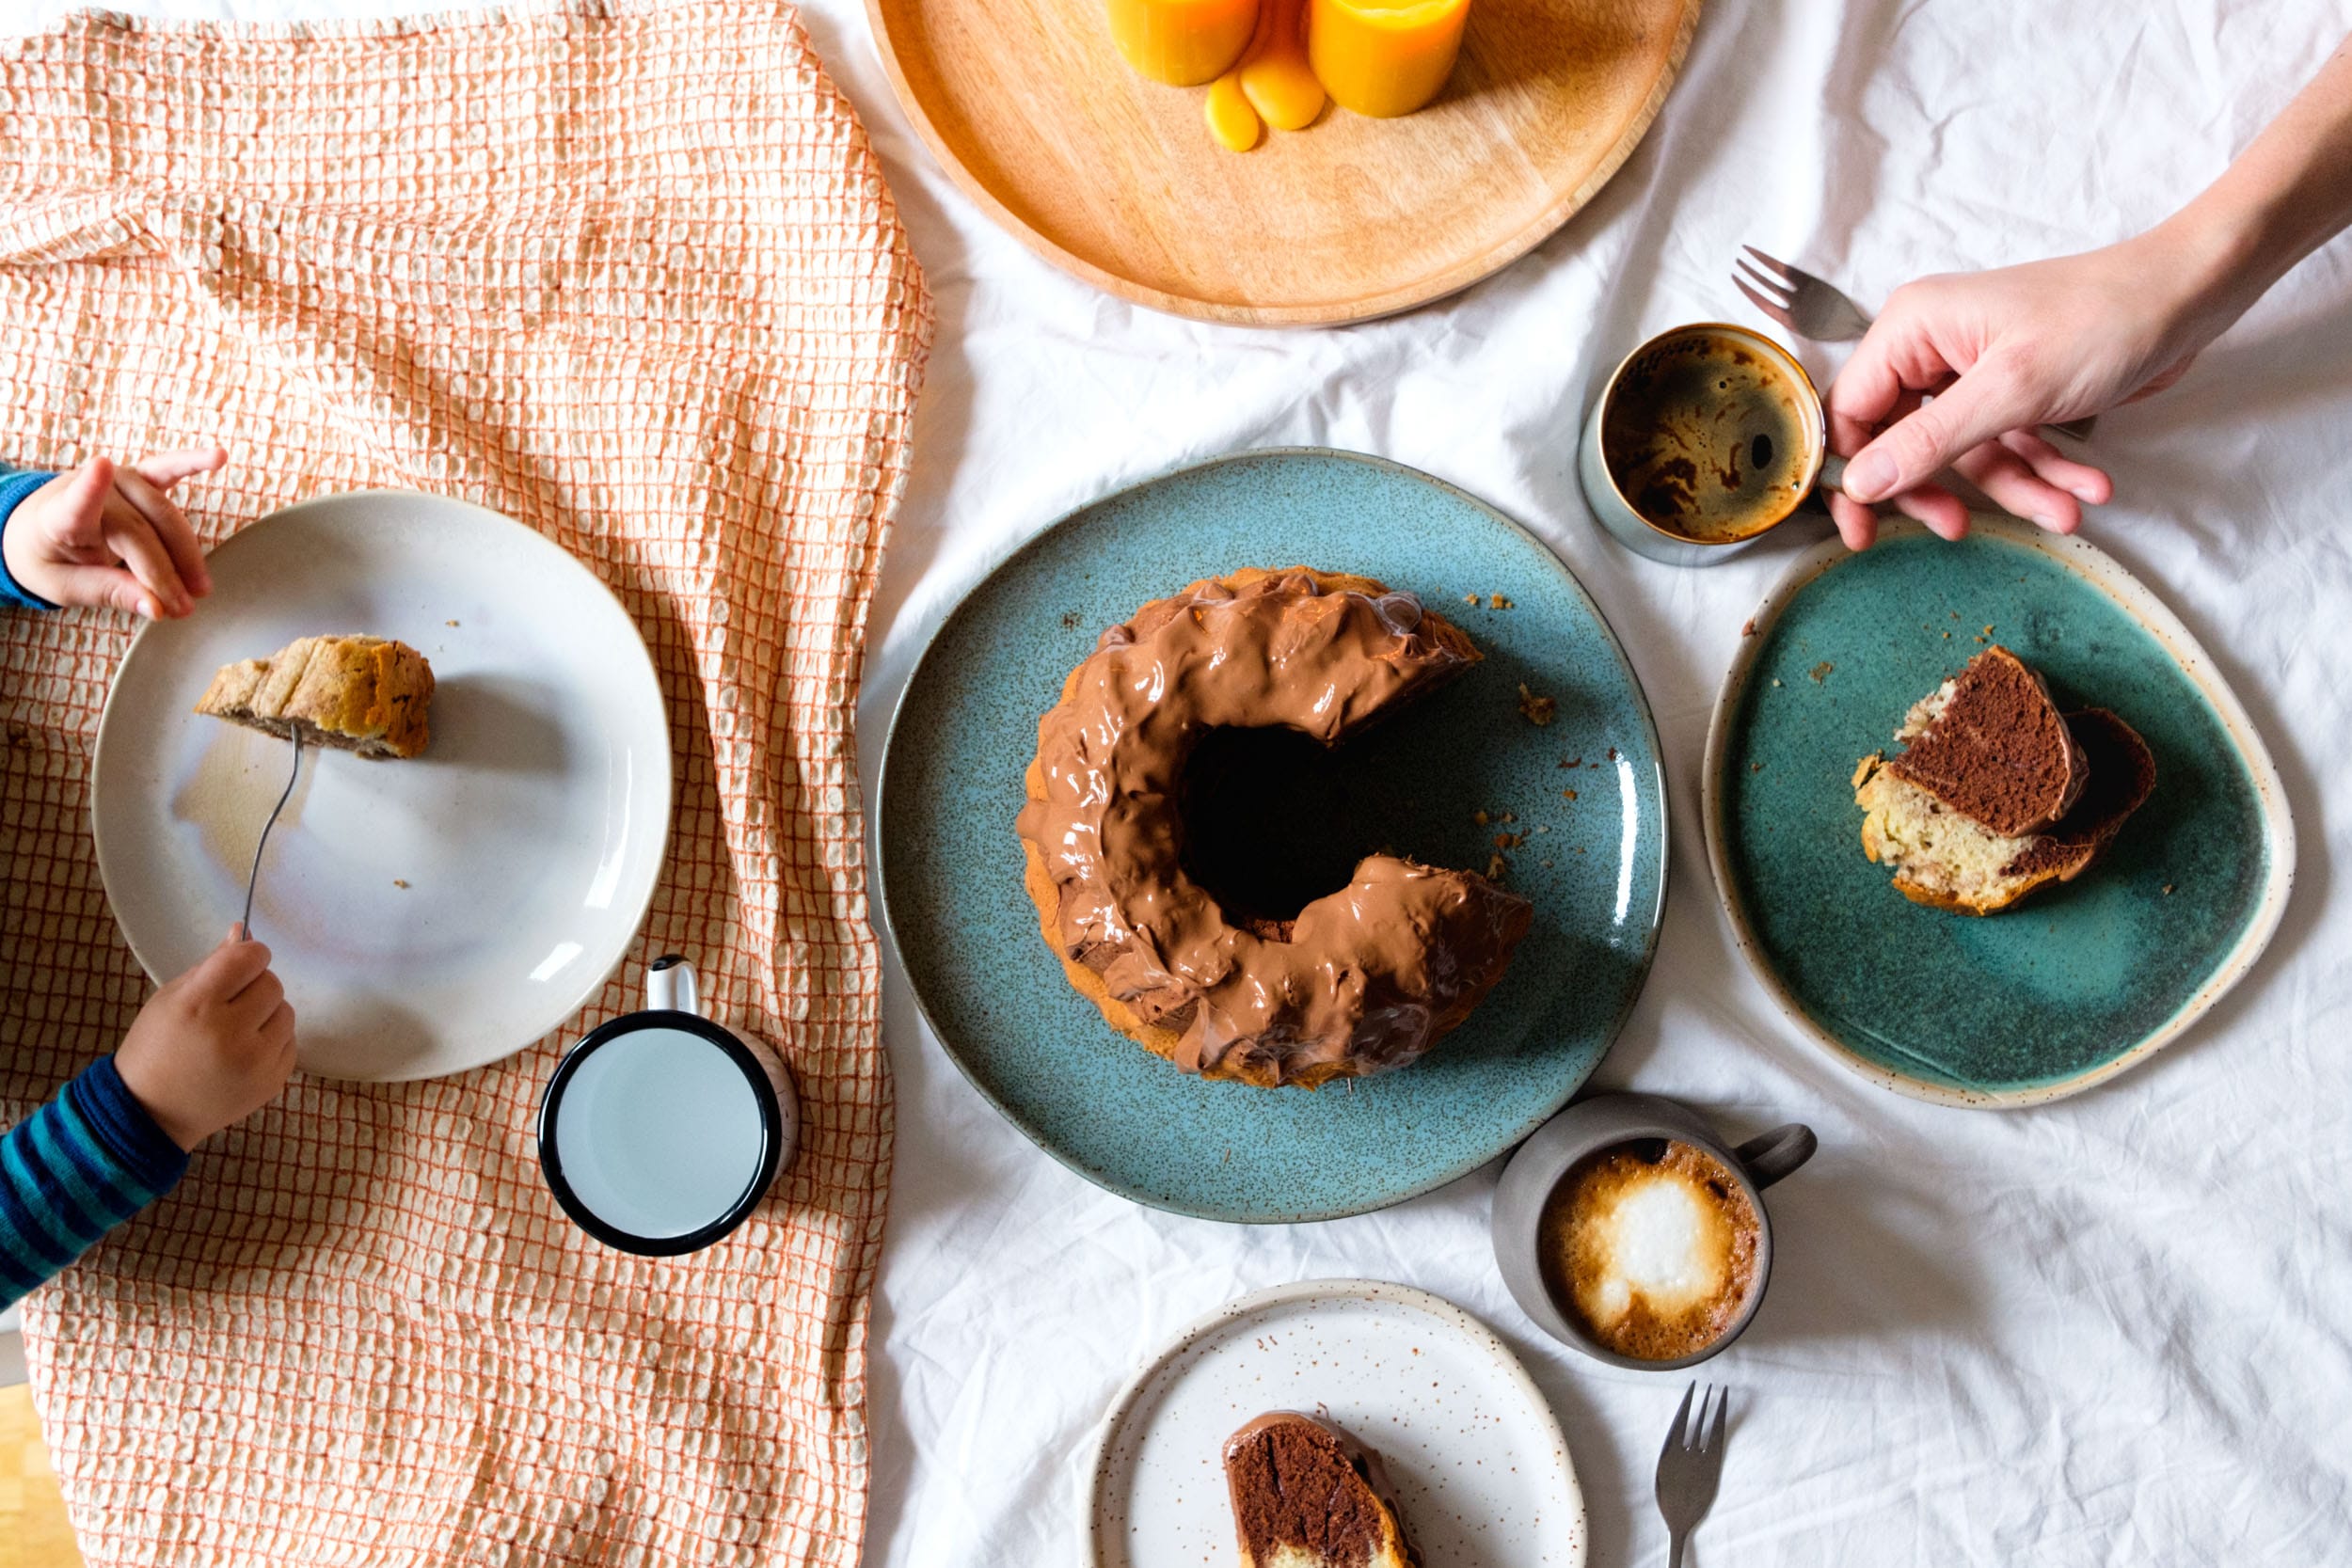 Sonntagskuchen | Marmorkuchen mit Schokoklecks | Schokoladiger Gugelhupf aus Rührteig | Einfach und lecker | Backen | Rezept auf ivy.li #backen #rezept